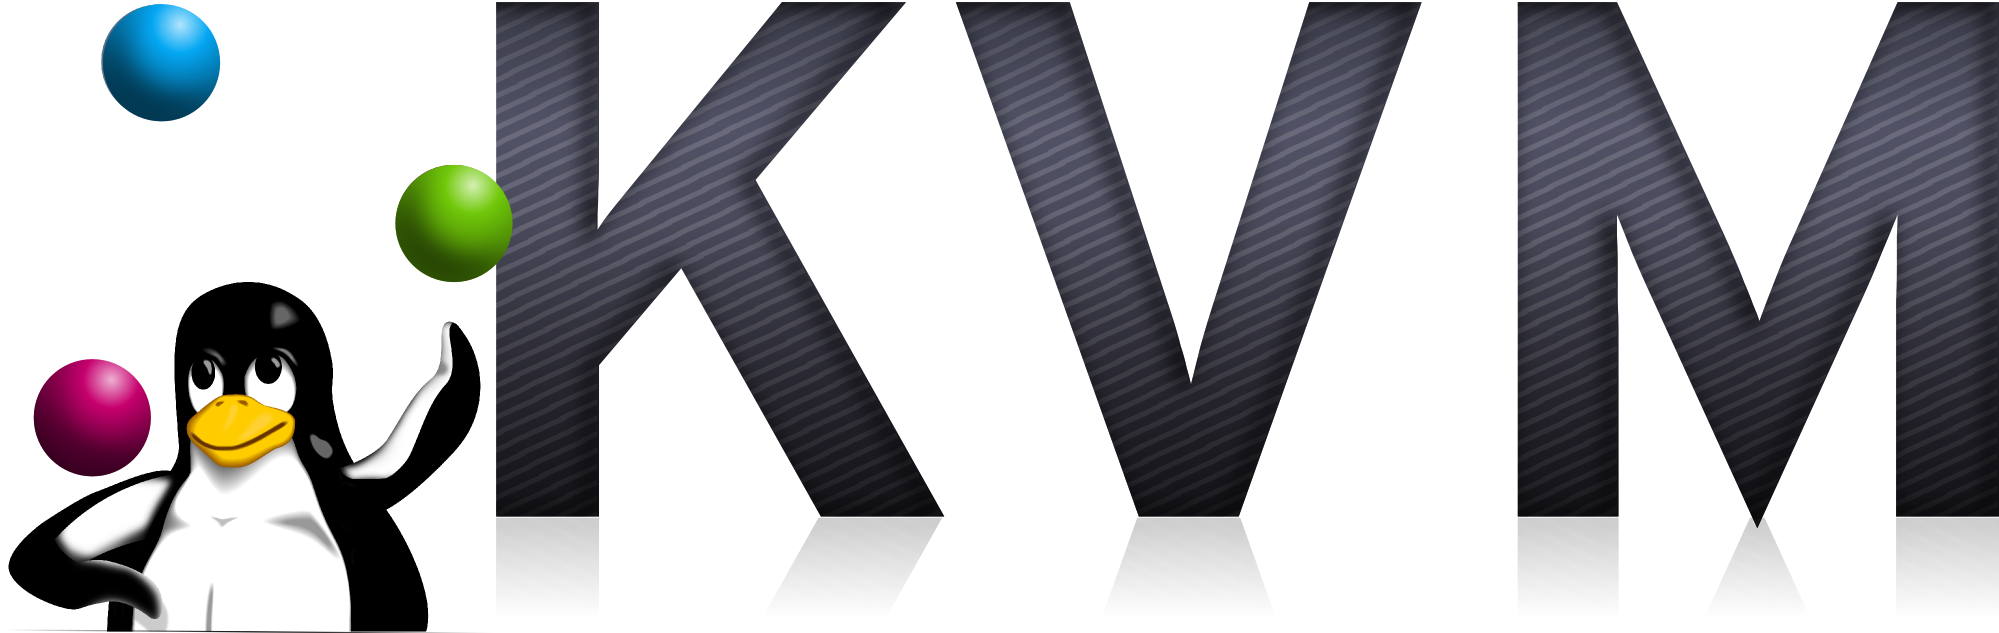 Наводжу замітку в яку піде мова про налаштування та встановлення популярної системи віртуалізації   KVM   (Kernel-based Virtual Machine)